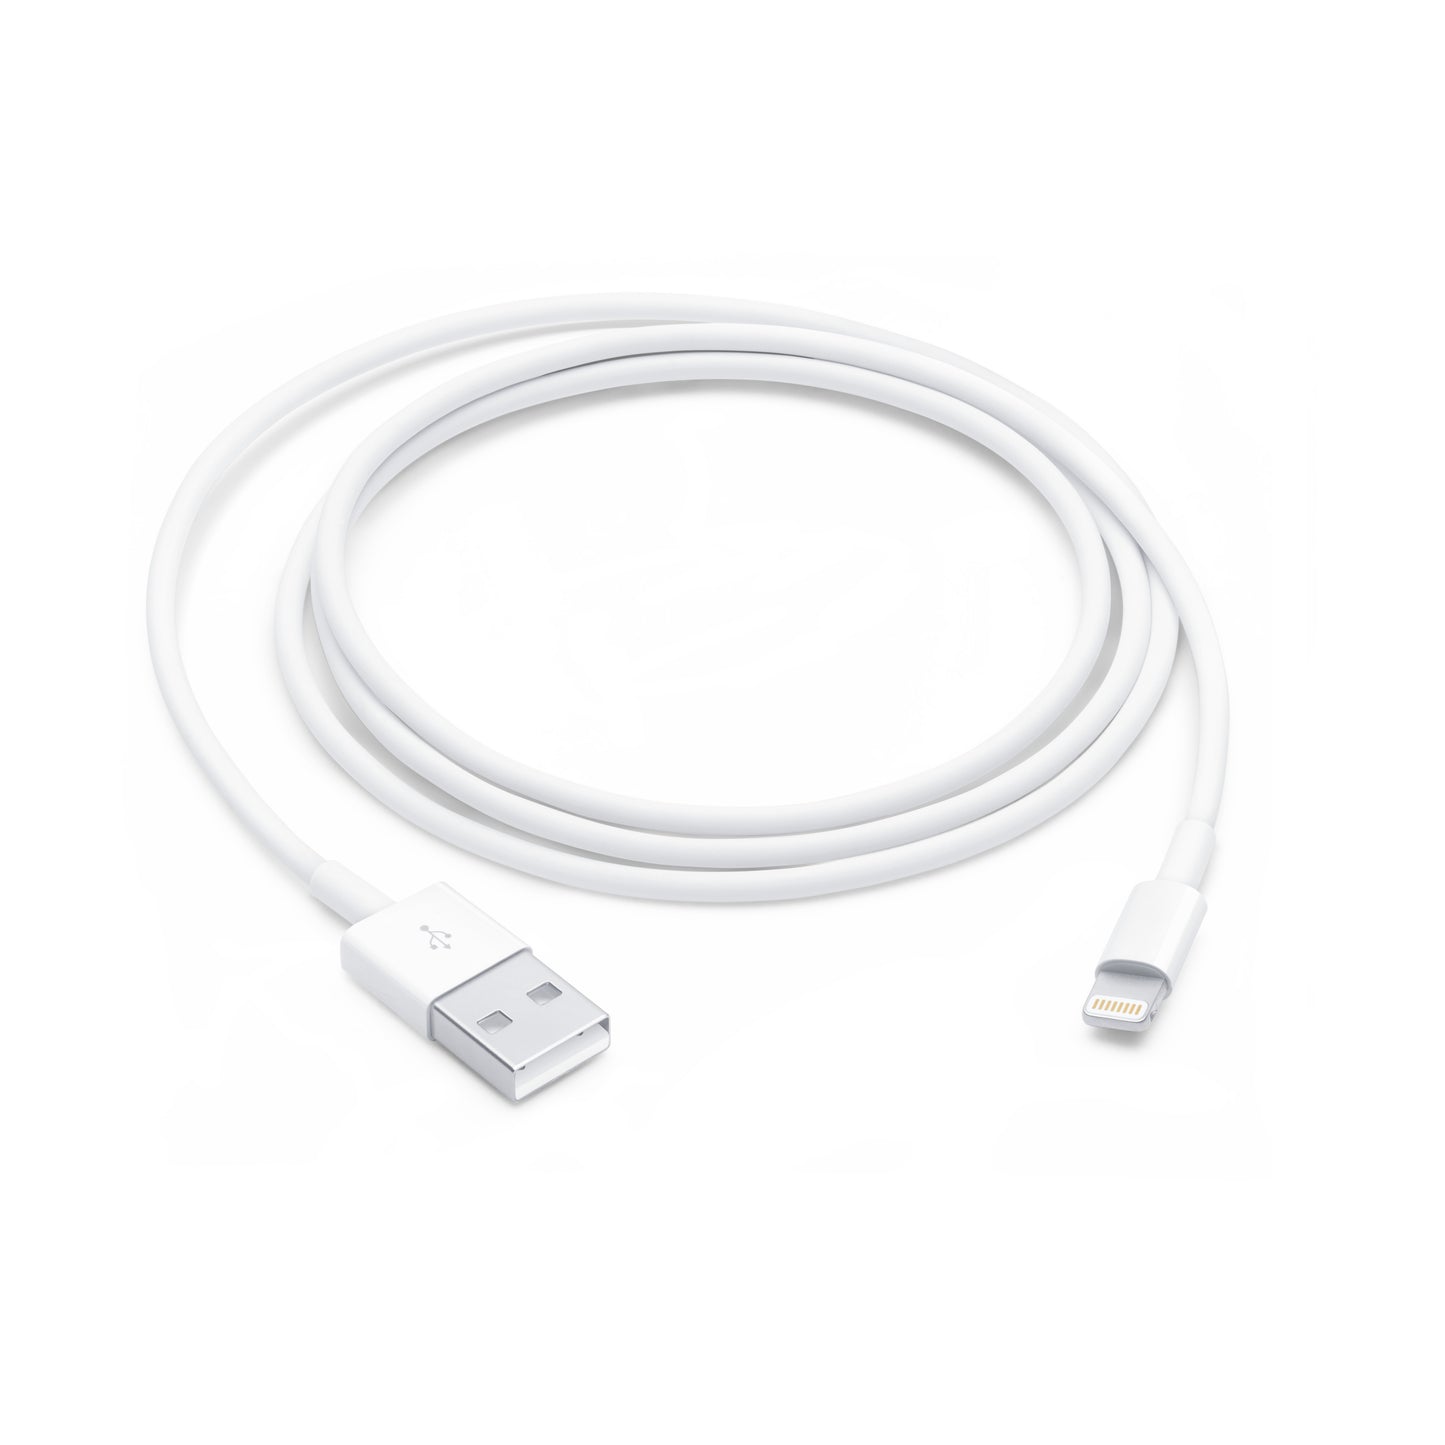 Cable Lightning para Iphone Ipad Ipod Mac 2MT